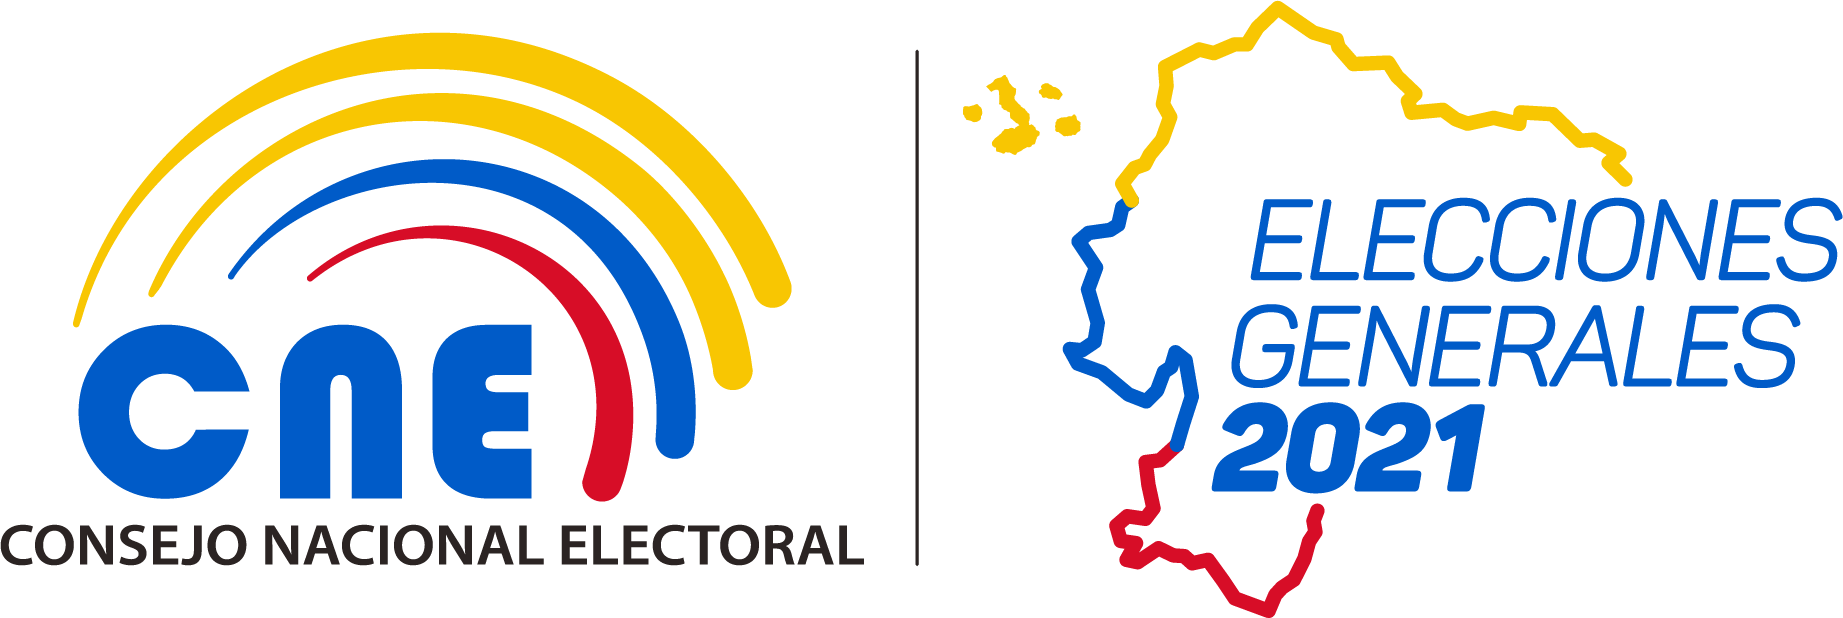 ELECCIONES_2021 Así se inició el proceso electoral en Ecuador